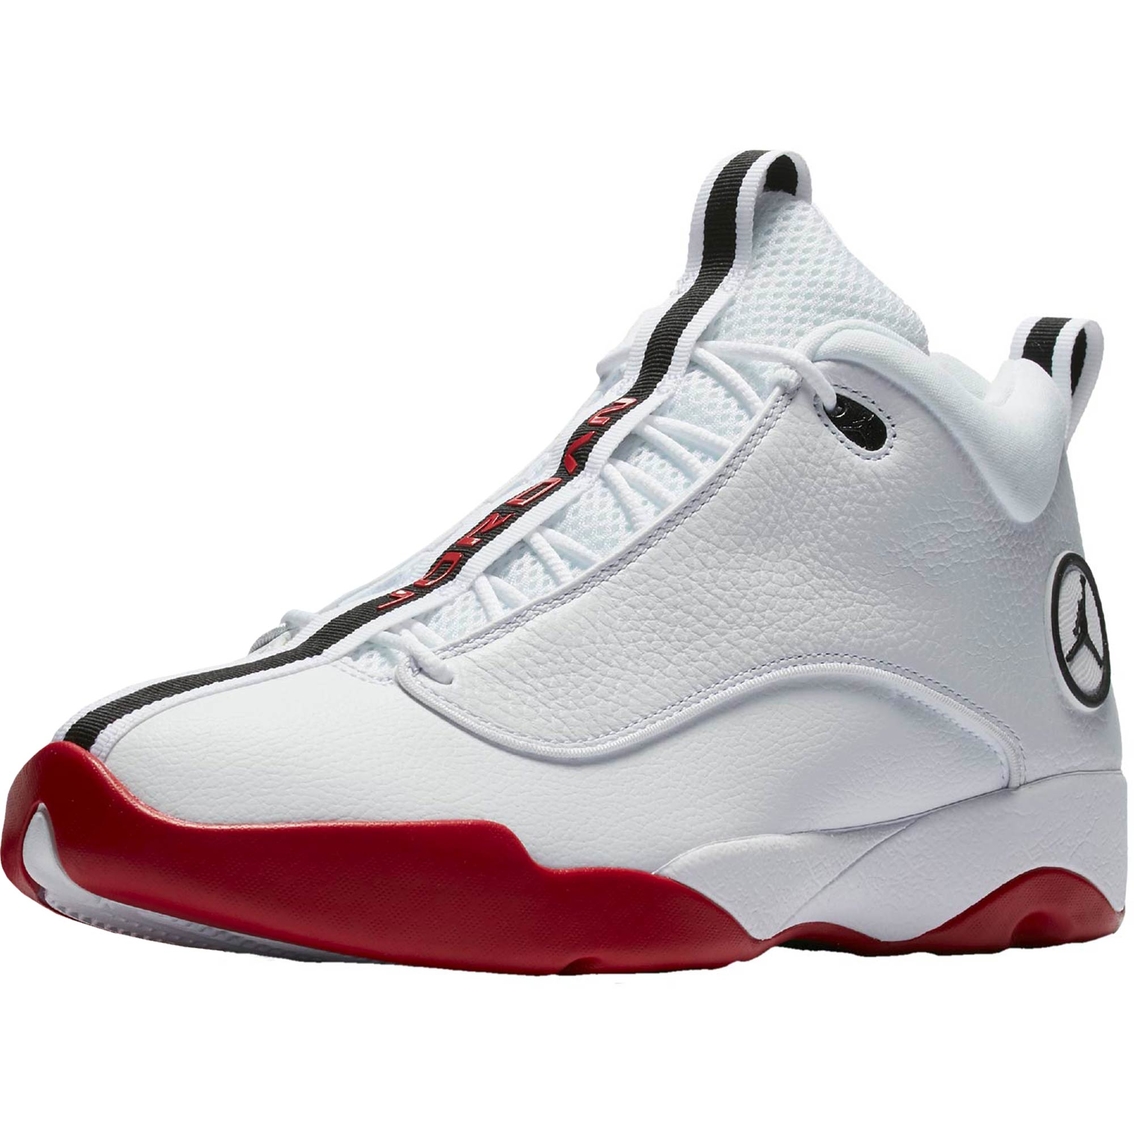 Jordan Men's Jumpman Pro Quick Shoes | Men's Athletic Shoes | Shoes ...